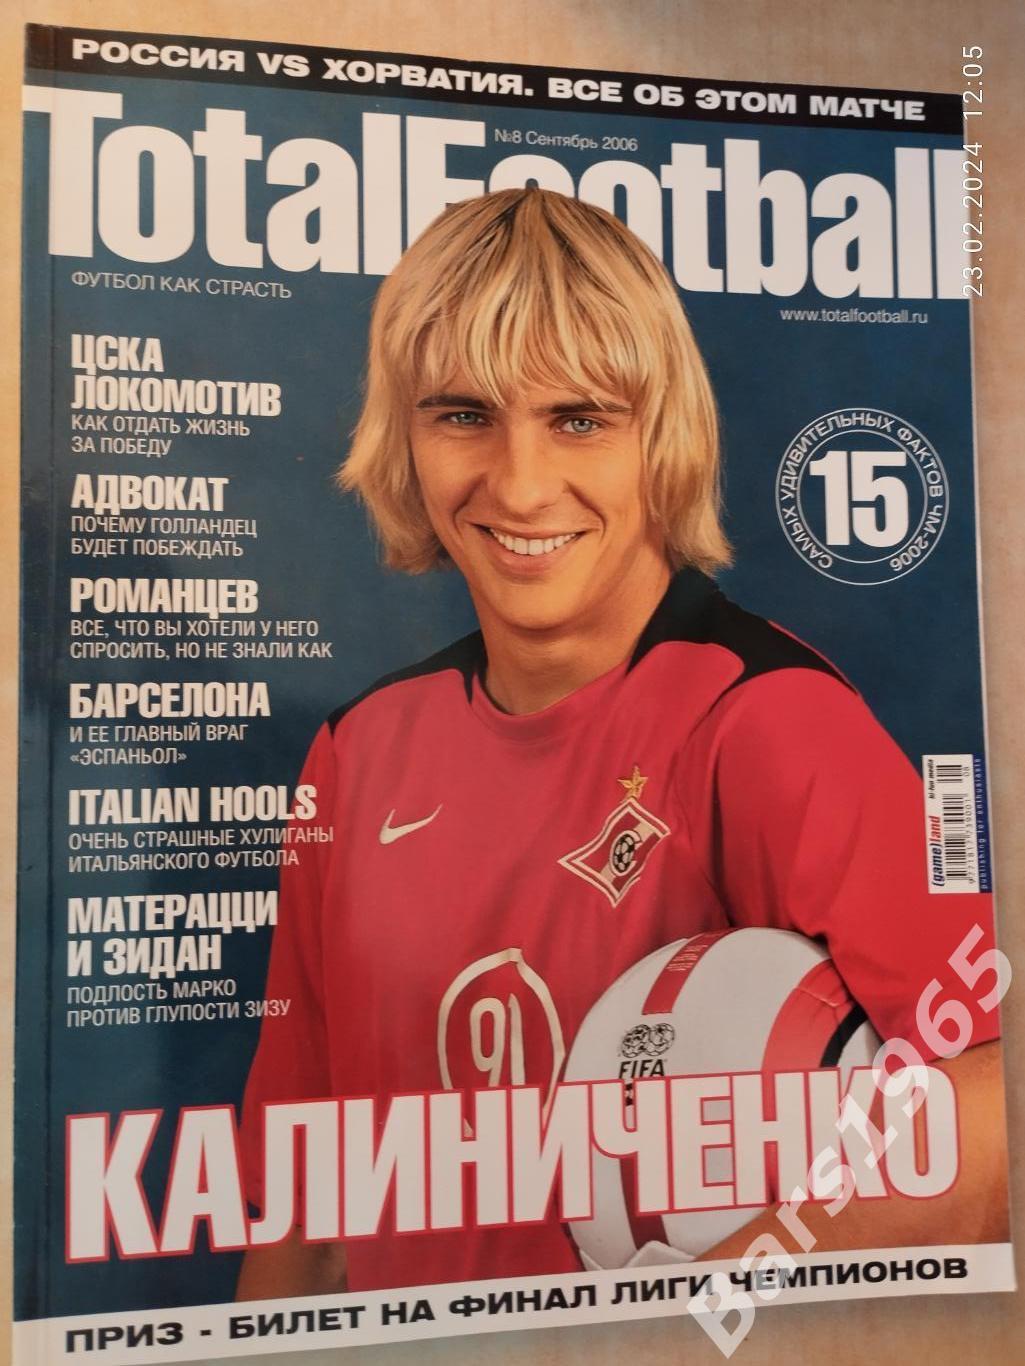 Total Football № 8 сентябрь 2006 с постером